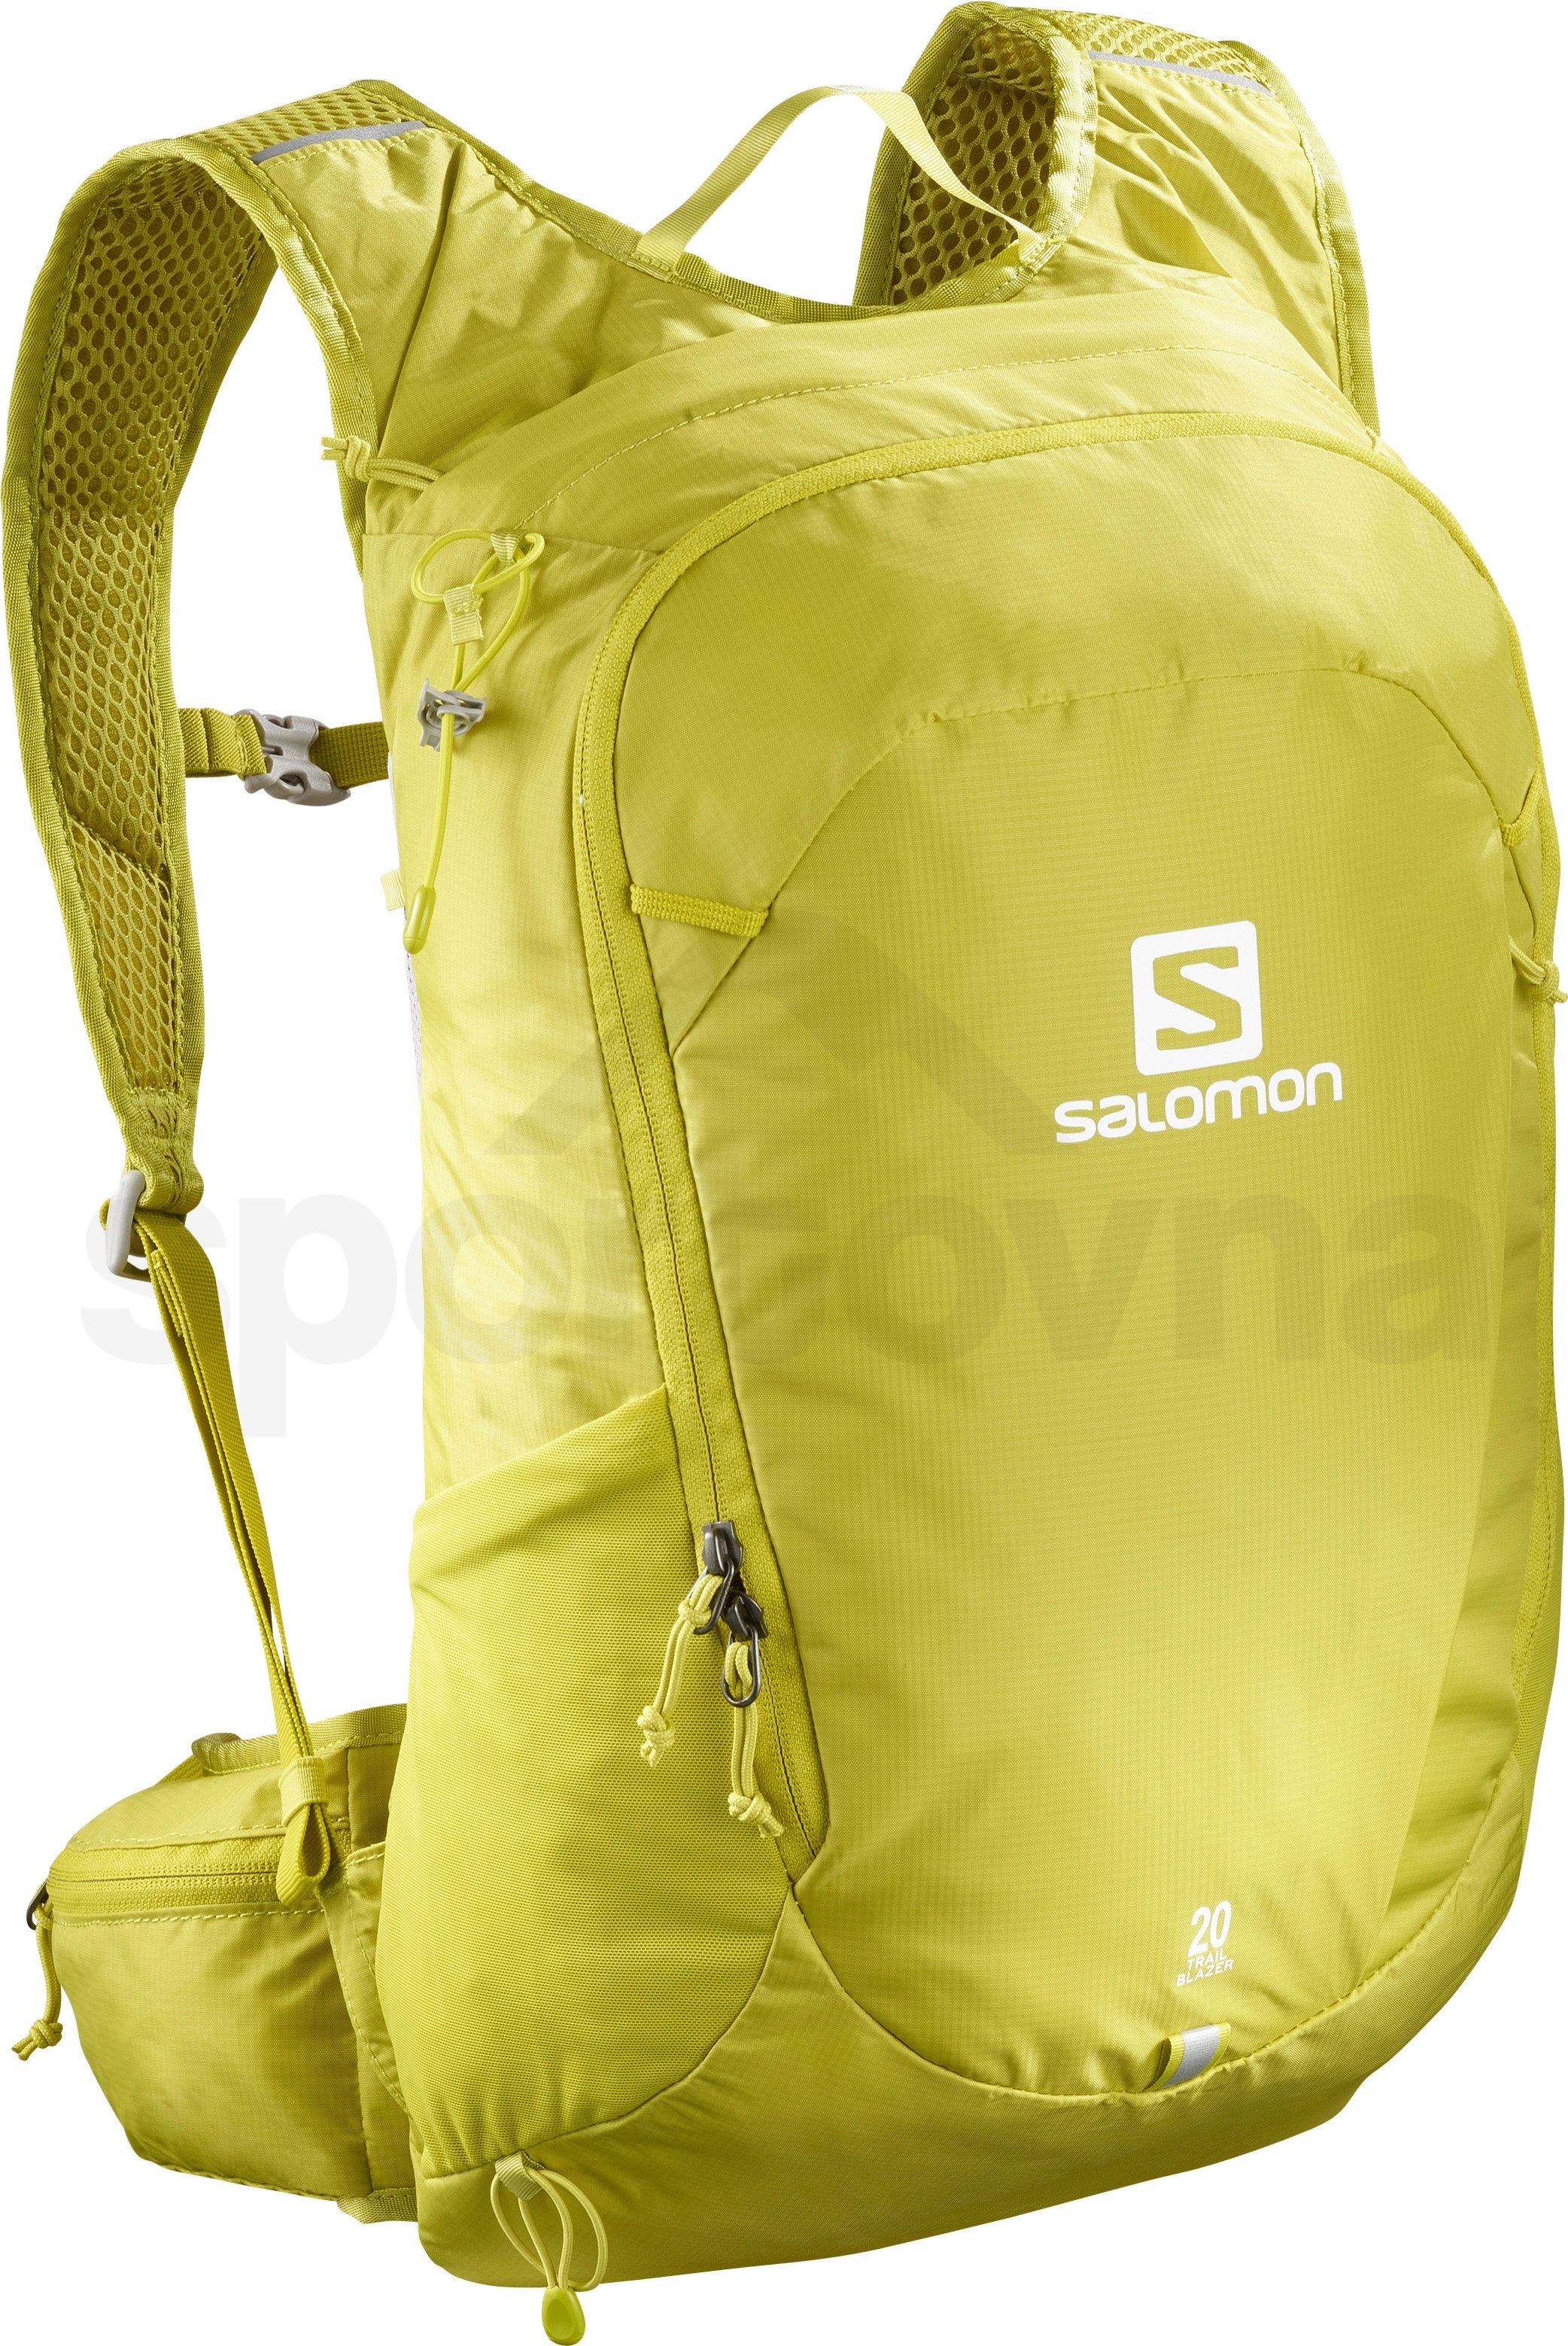 Batoh Salomon Trailblazer 20 - žlutá/zelená